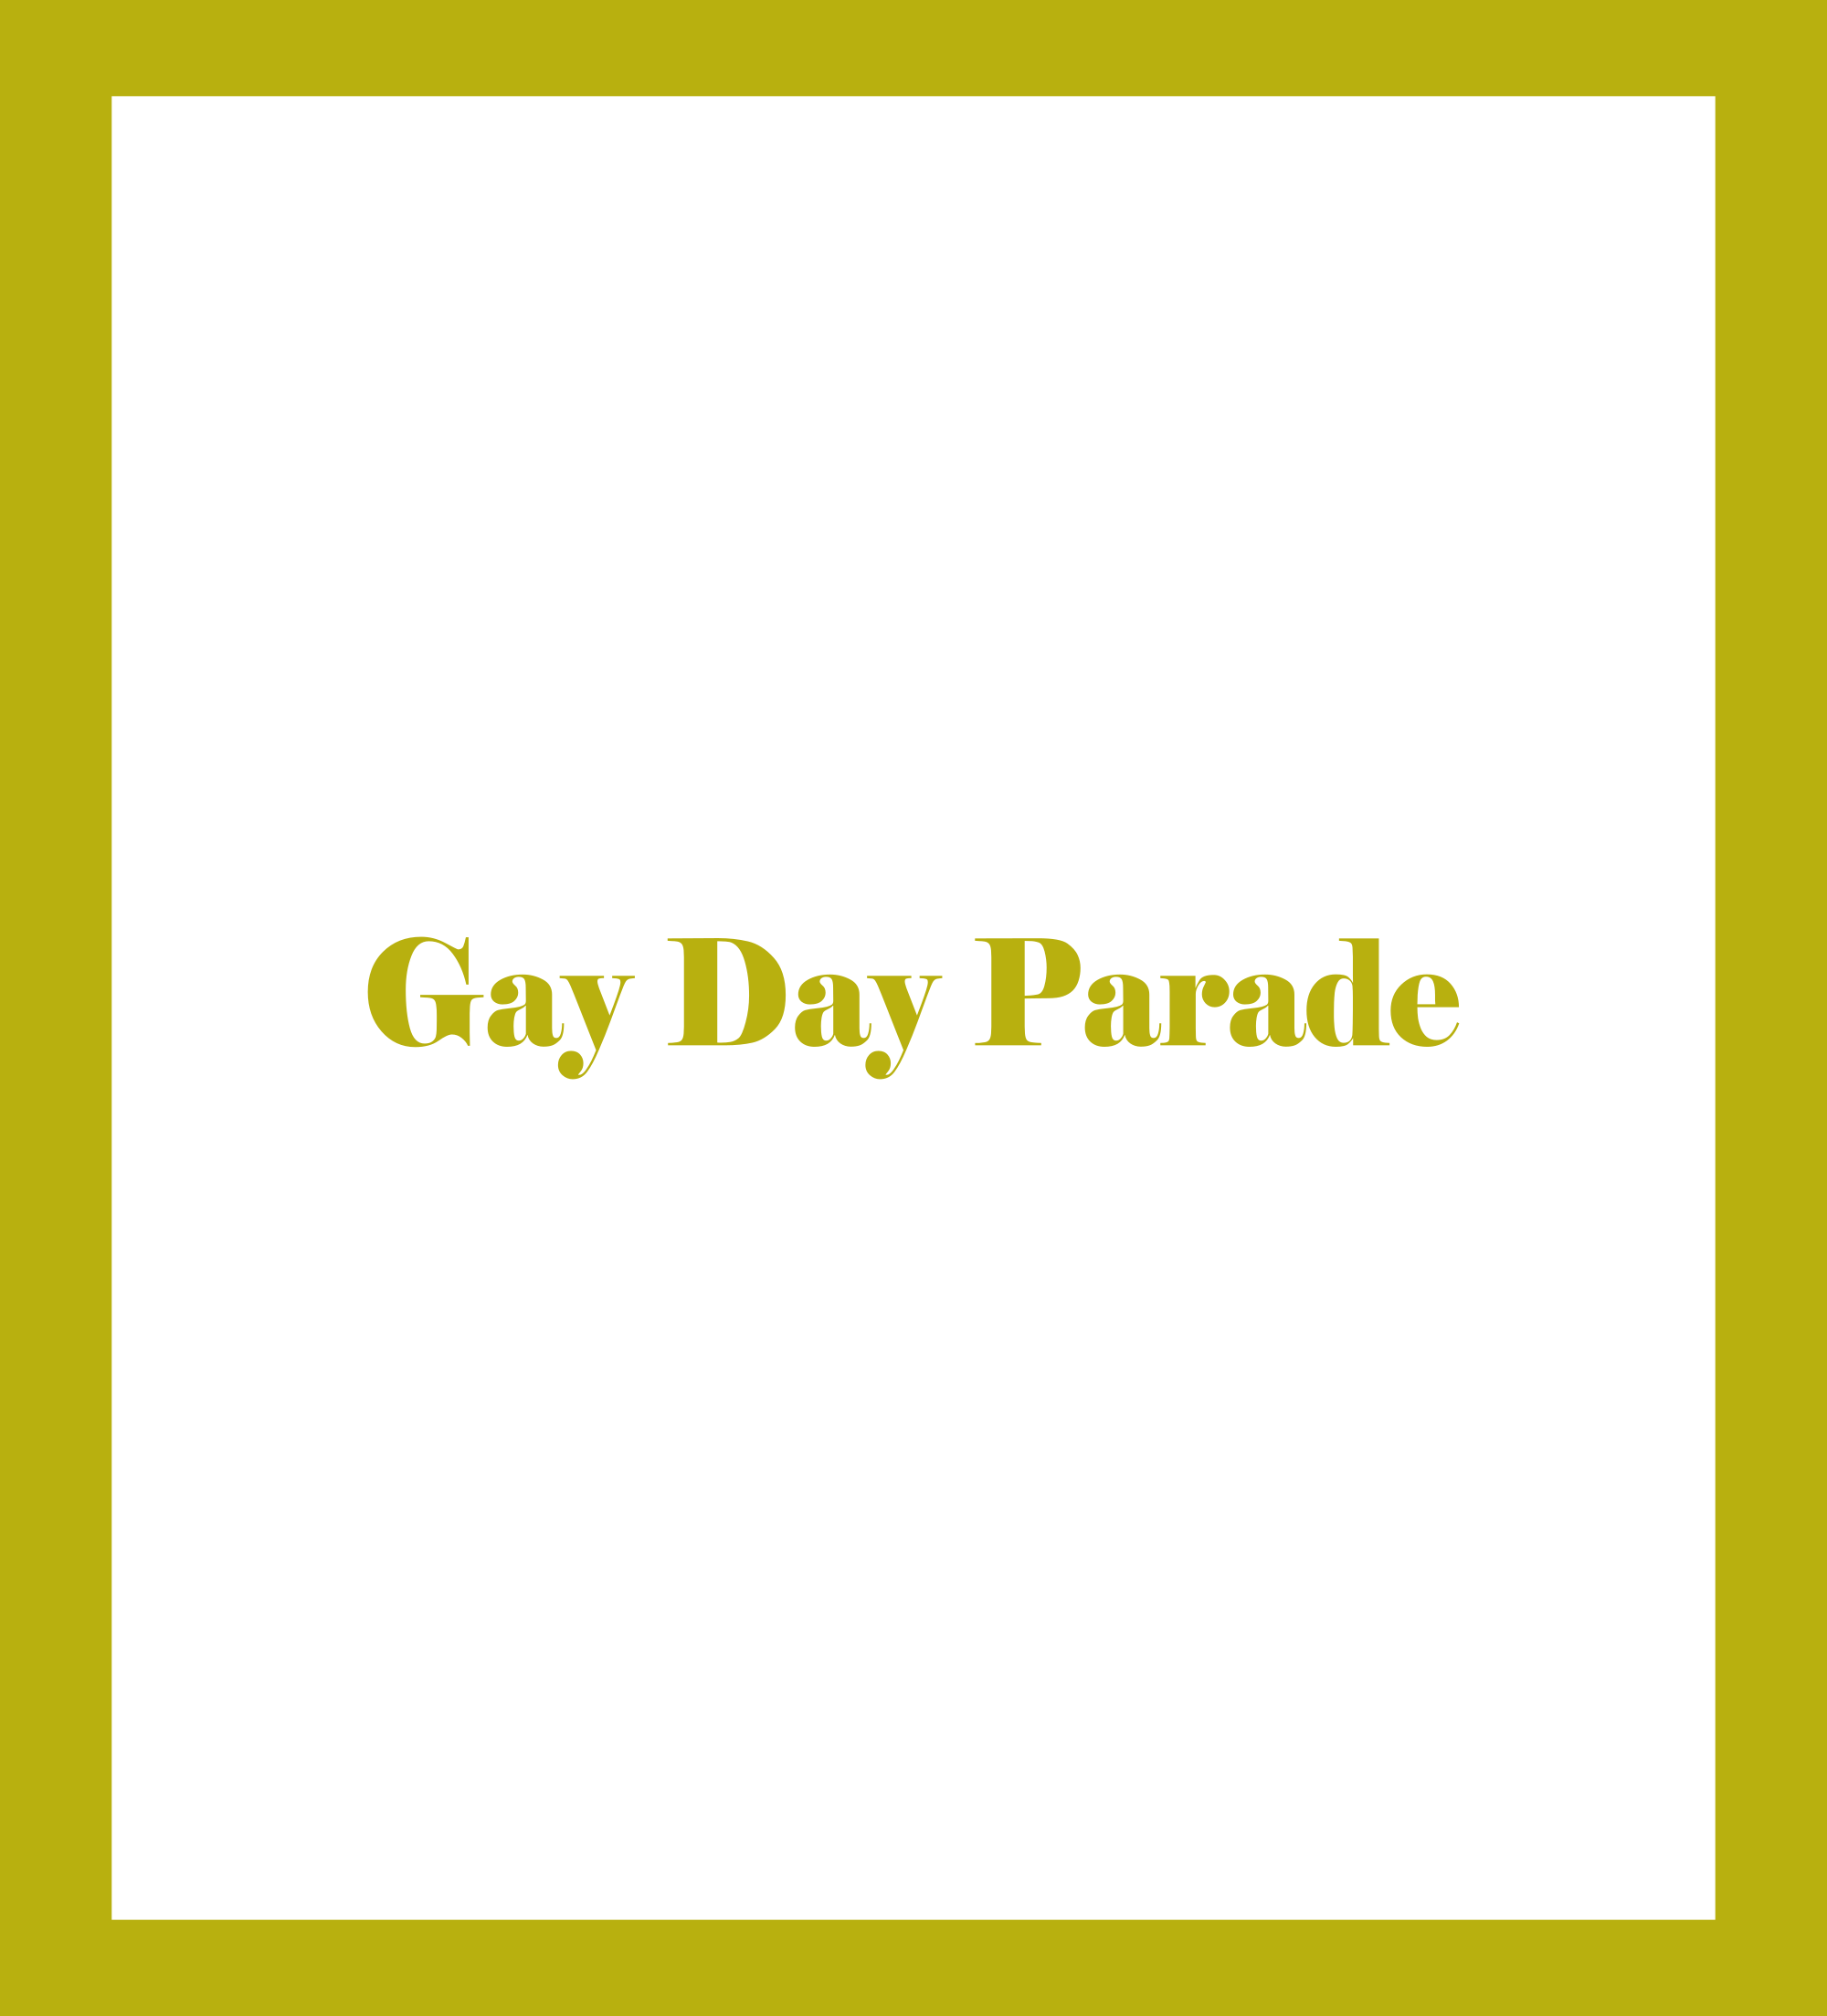 Gay Day Parade